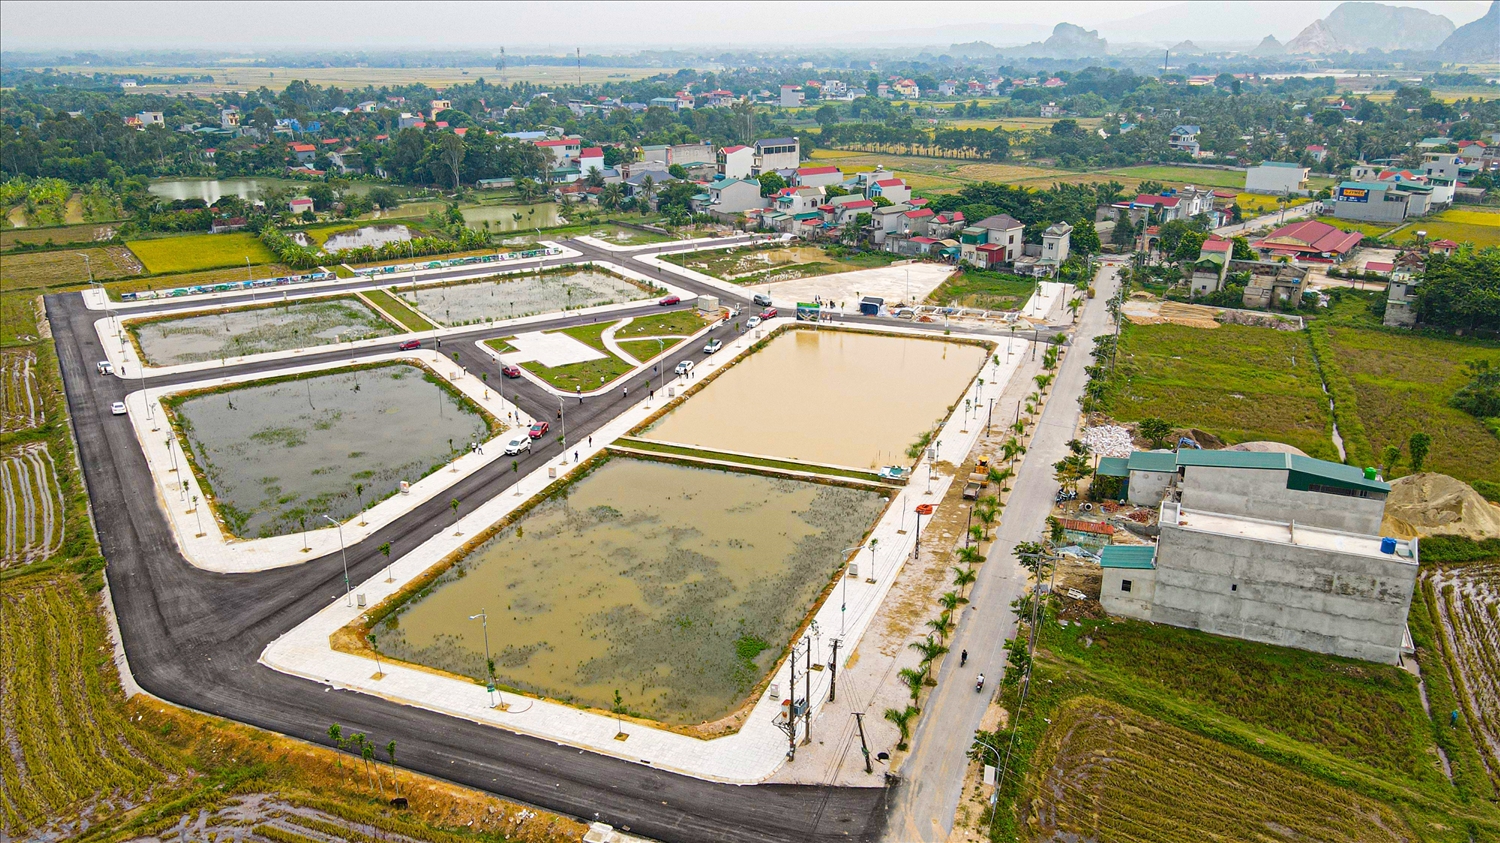 “Điểm dân cư thôn Mai Chữ, Đông Nam, Đông Sơn, Thanh Hoá”, một trong những dự án điển hình cho cách phát triển chuyên nghiệp và vì cộng đồng của CoreLand. 